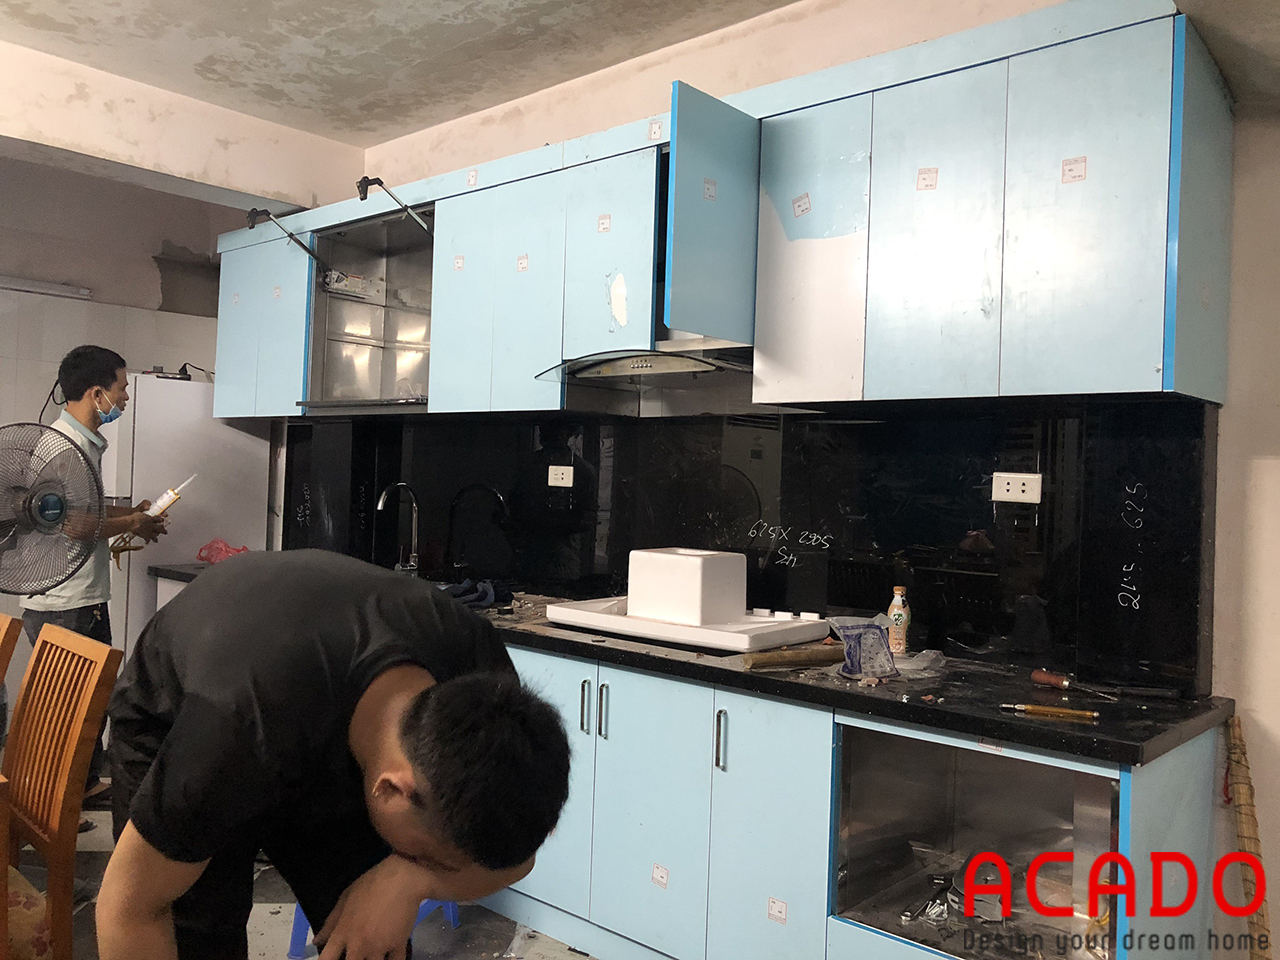 ACADO chuyên thiết kế và thi công tủ bếp và nội thất tại Hà Nội